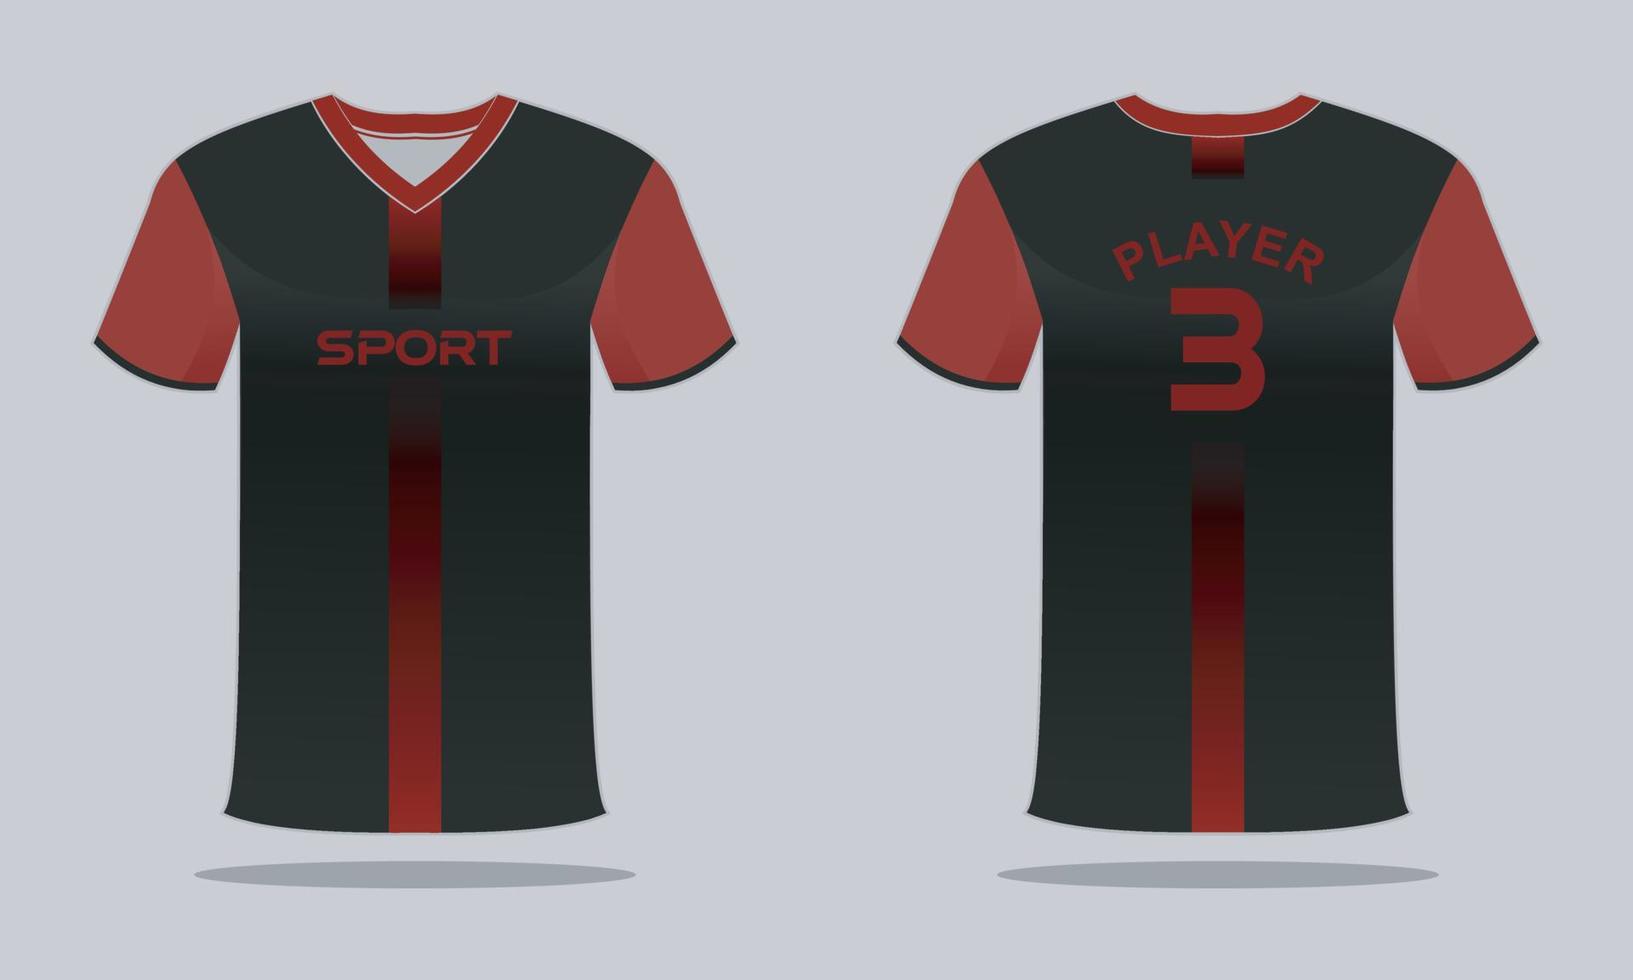 gli sport maglia e maglietta modello gli sport maglia design. gli sport design per calcio da corsa gioco vettore